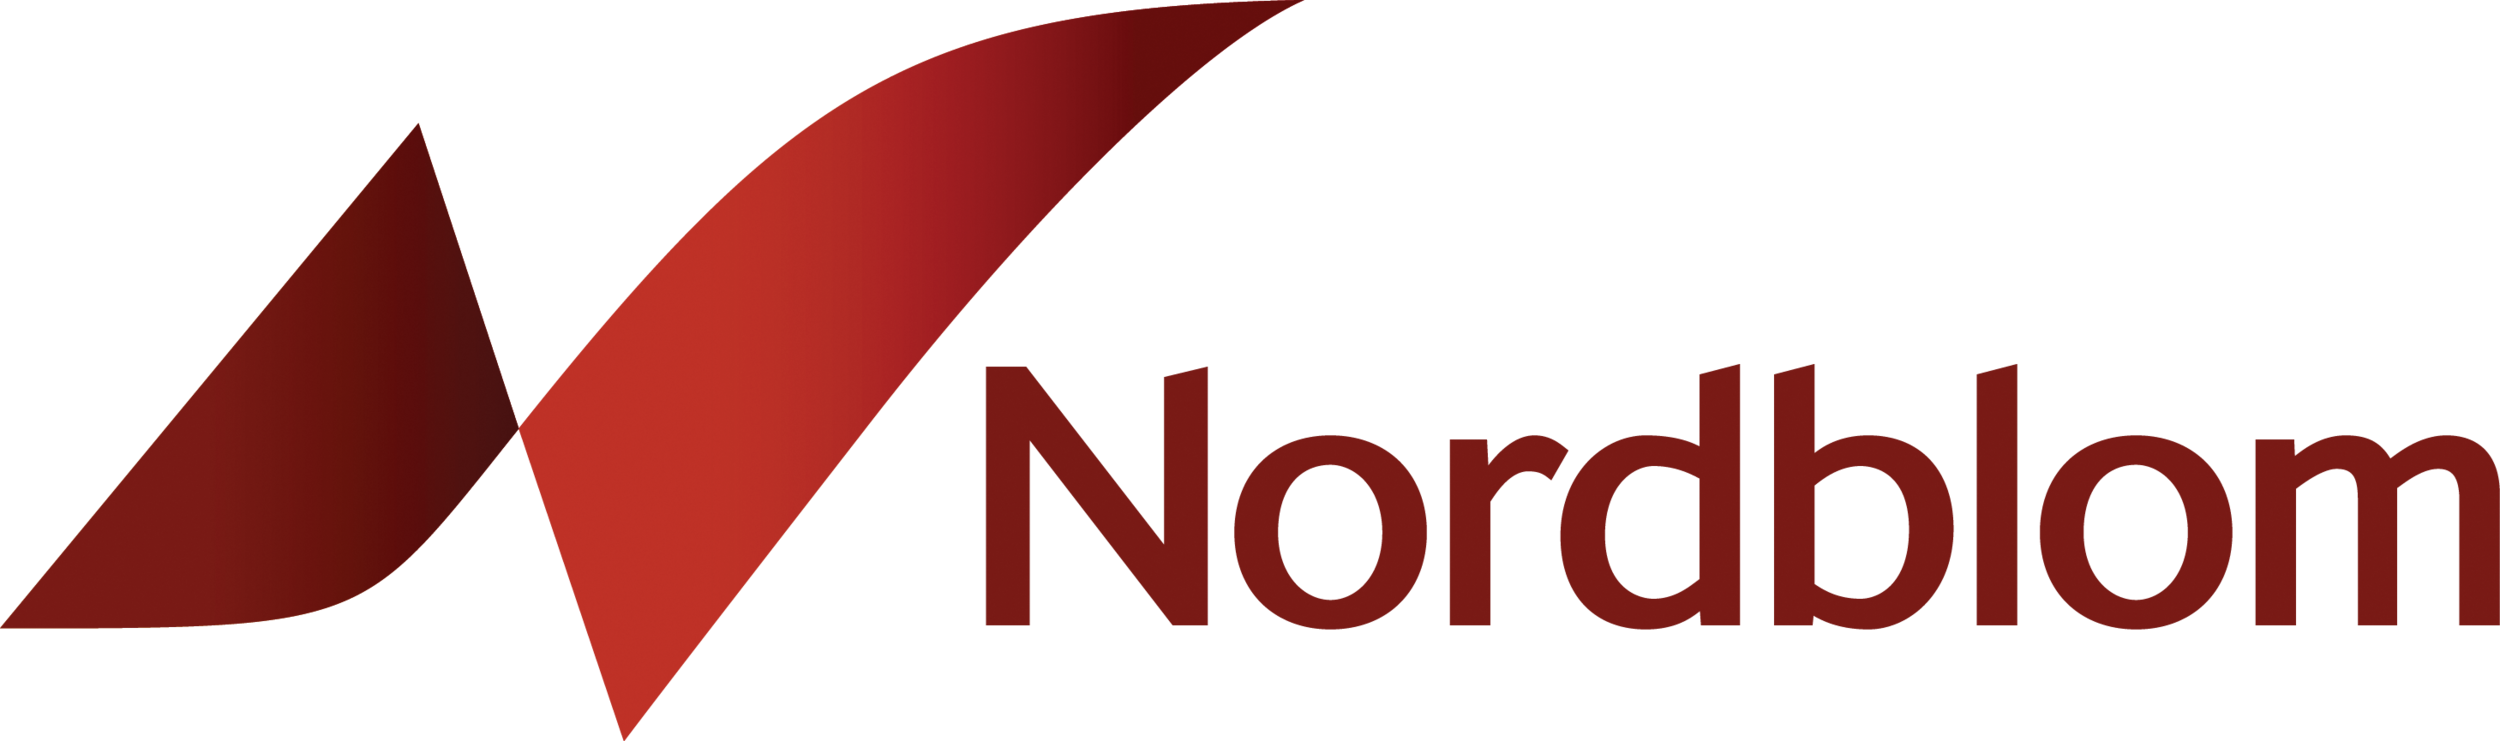 nordblom-logo.png